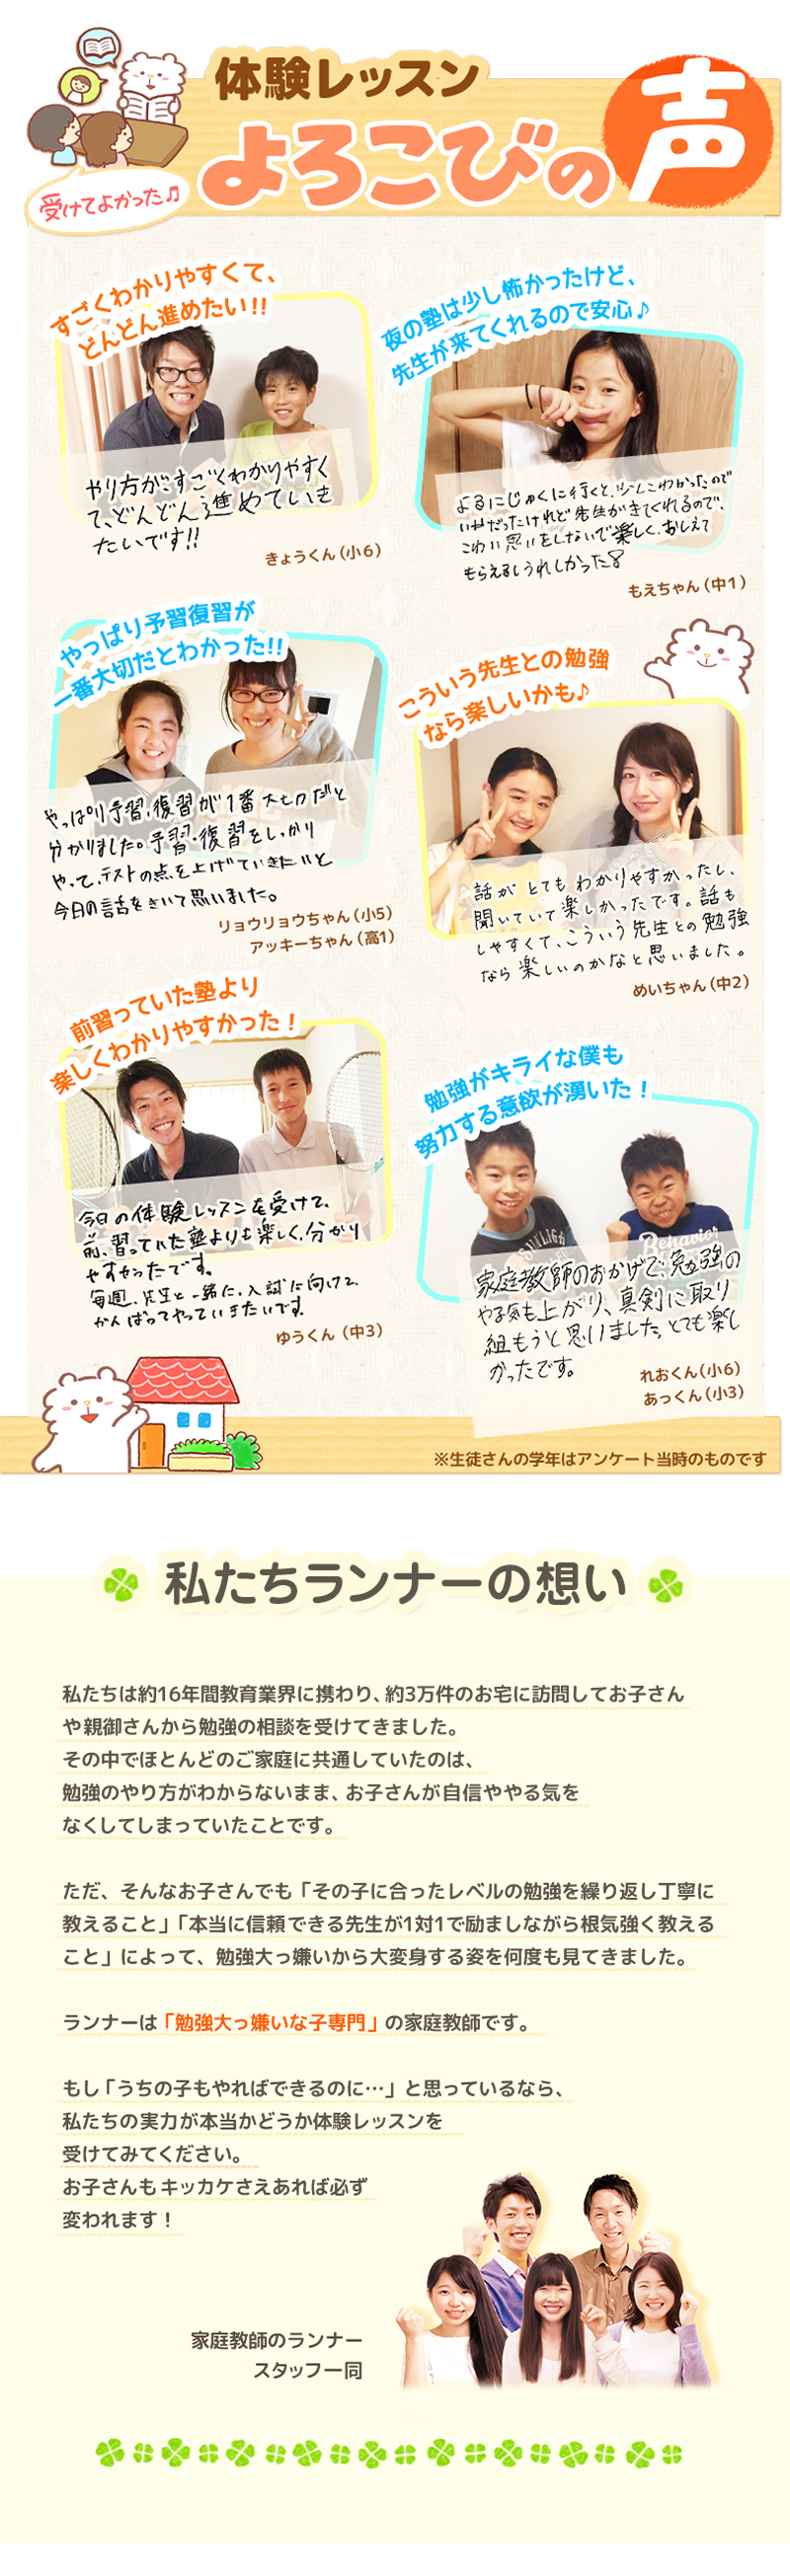 【家庭教師-静岡県-富士市のお客様のページ】【画像が表示されない場合はページ下部に画像と同じ内容をテキストで掲載していますのでそちらをご覧ください。】